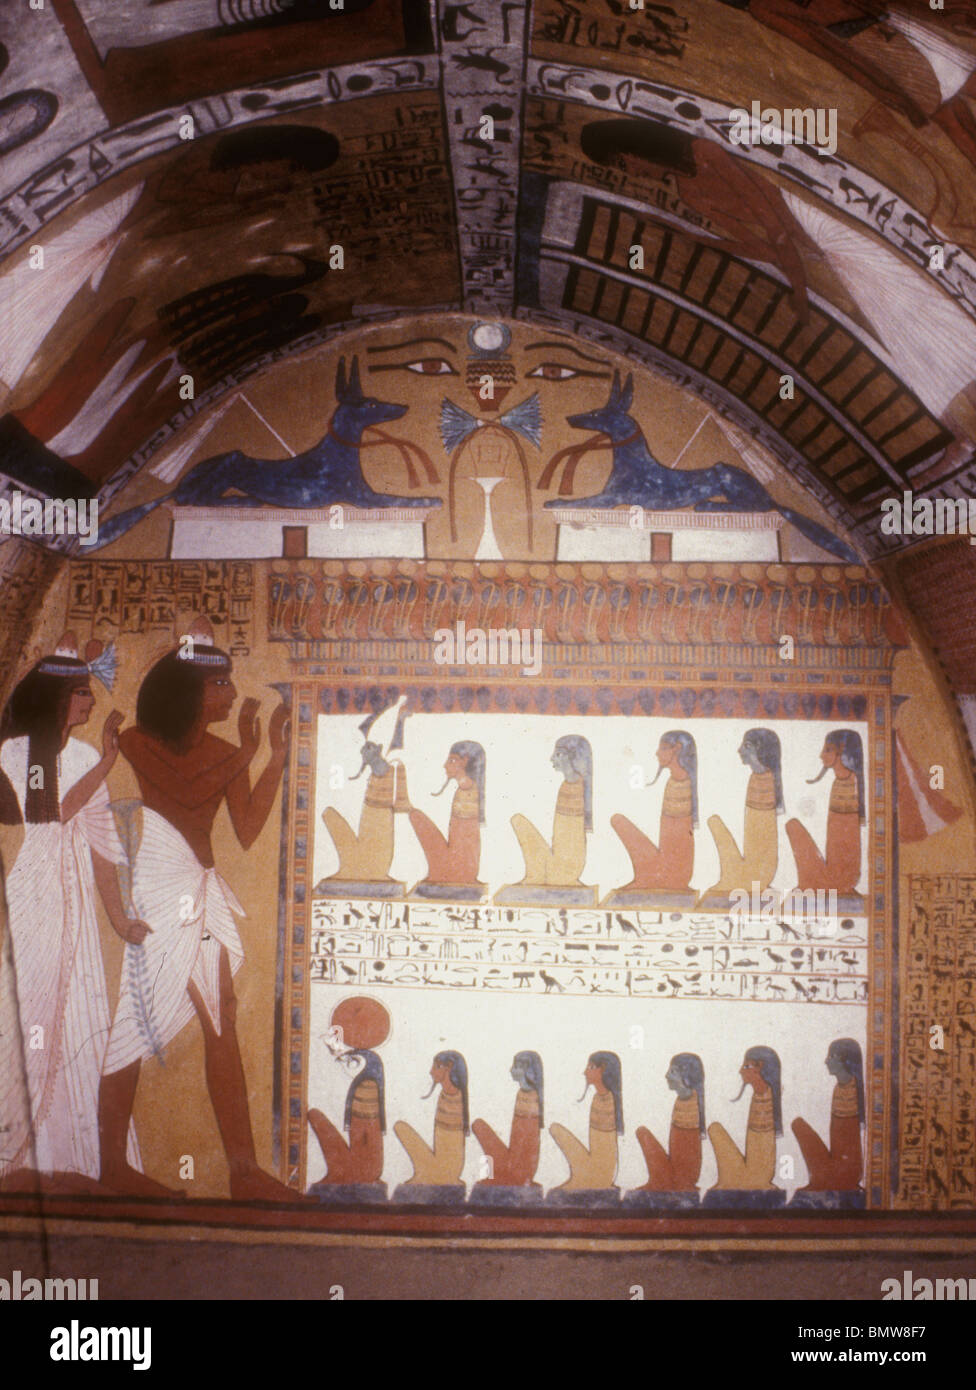 Murale nella Tomba di Sennedjem sepolto nella camera della sua tomba TT1 probabilmente intorno all'anno 11 del regno di Ramesse. Foto Stock